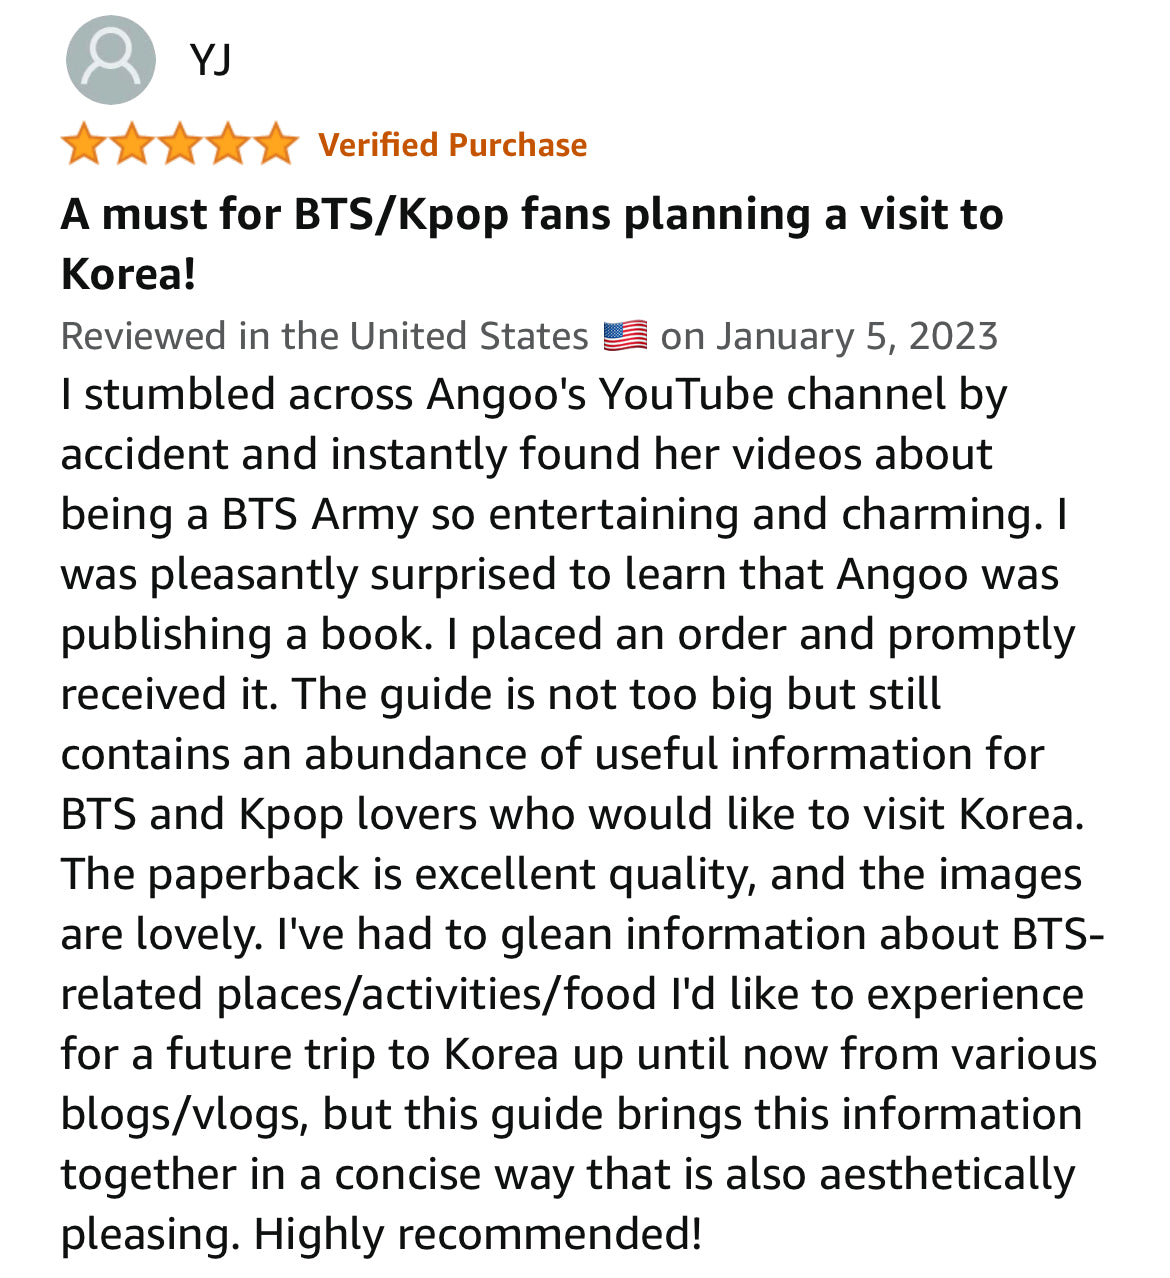 Seoul Guide For K-Pop Fans